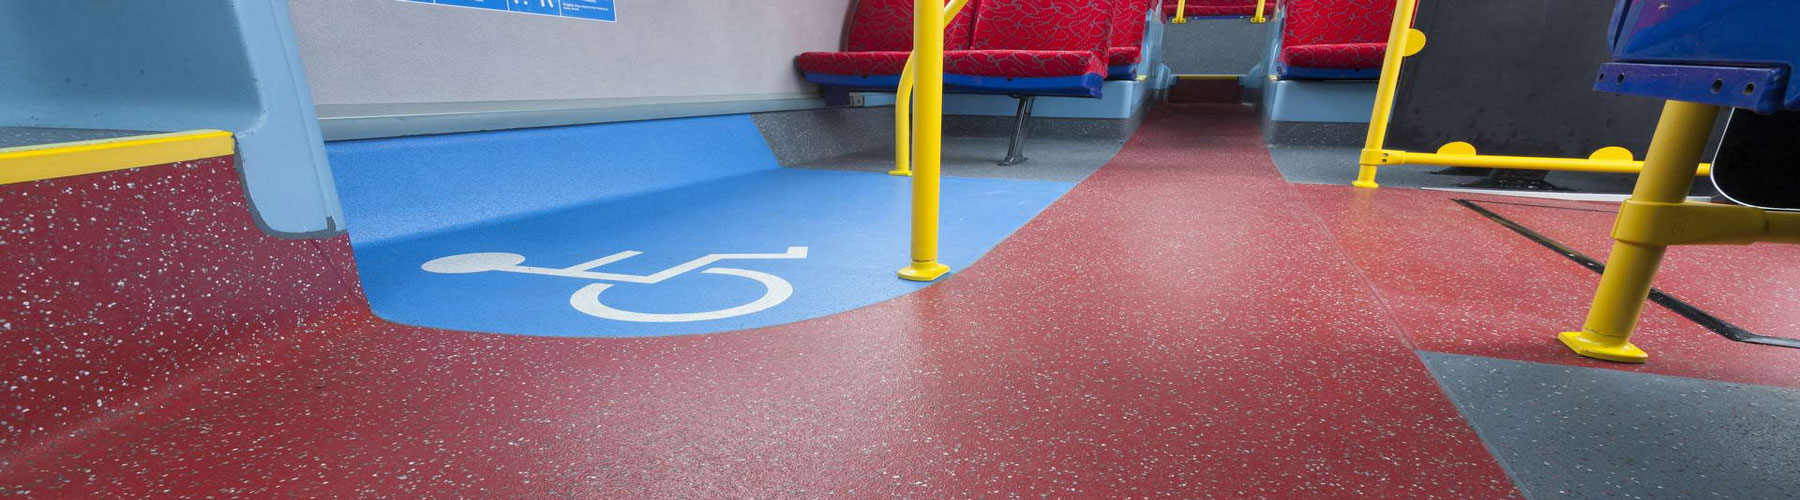 Transport Safety Flooring